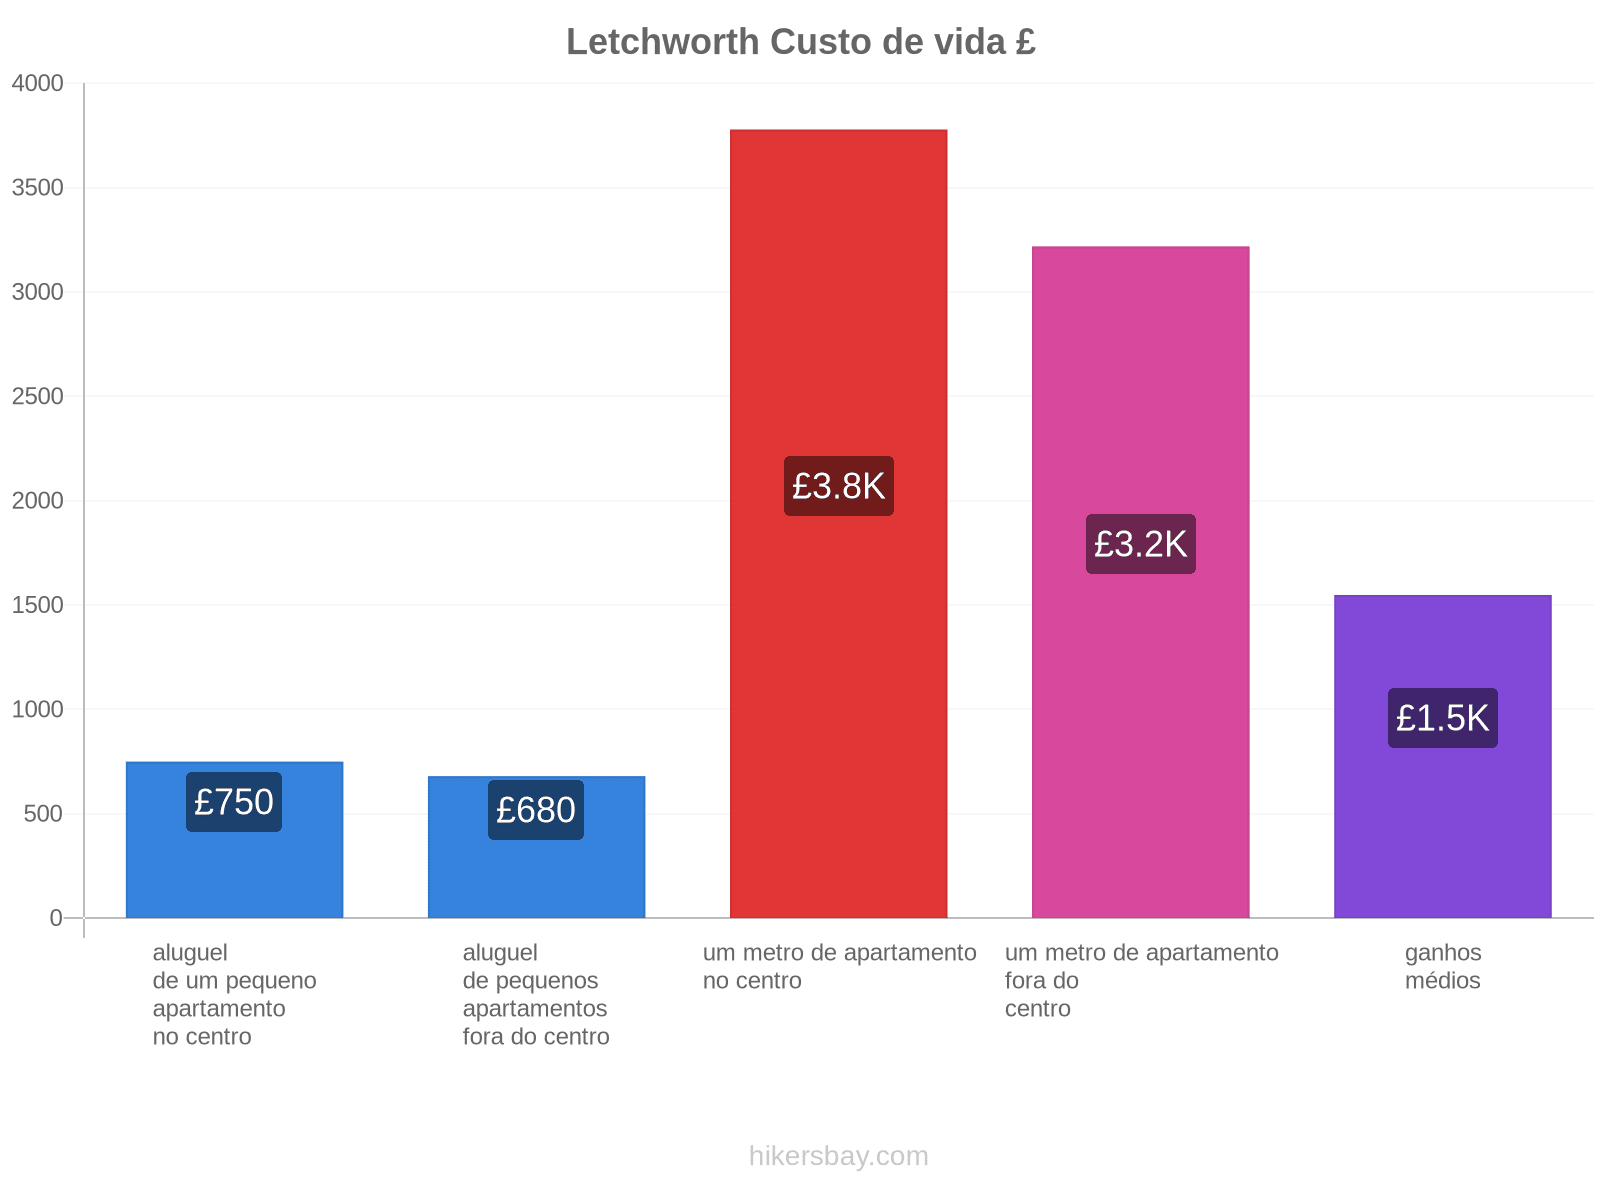 Letchworth custo de vida hikersbay.com